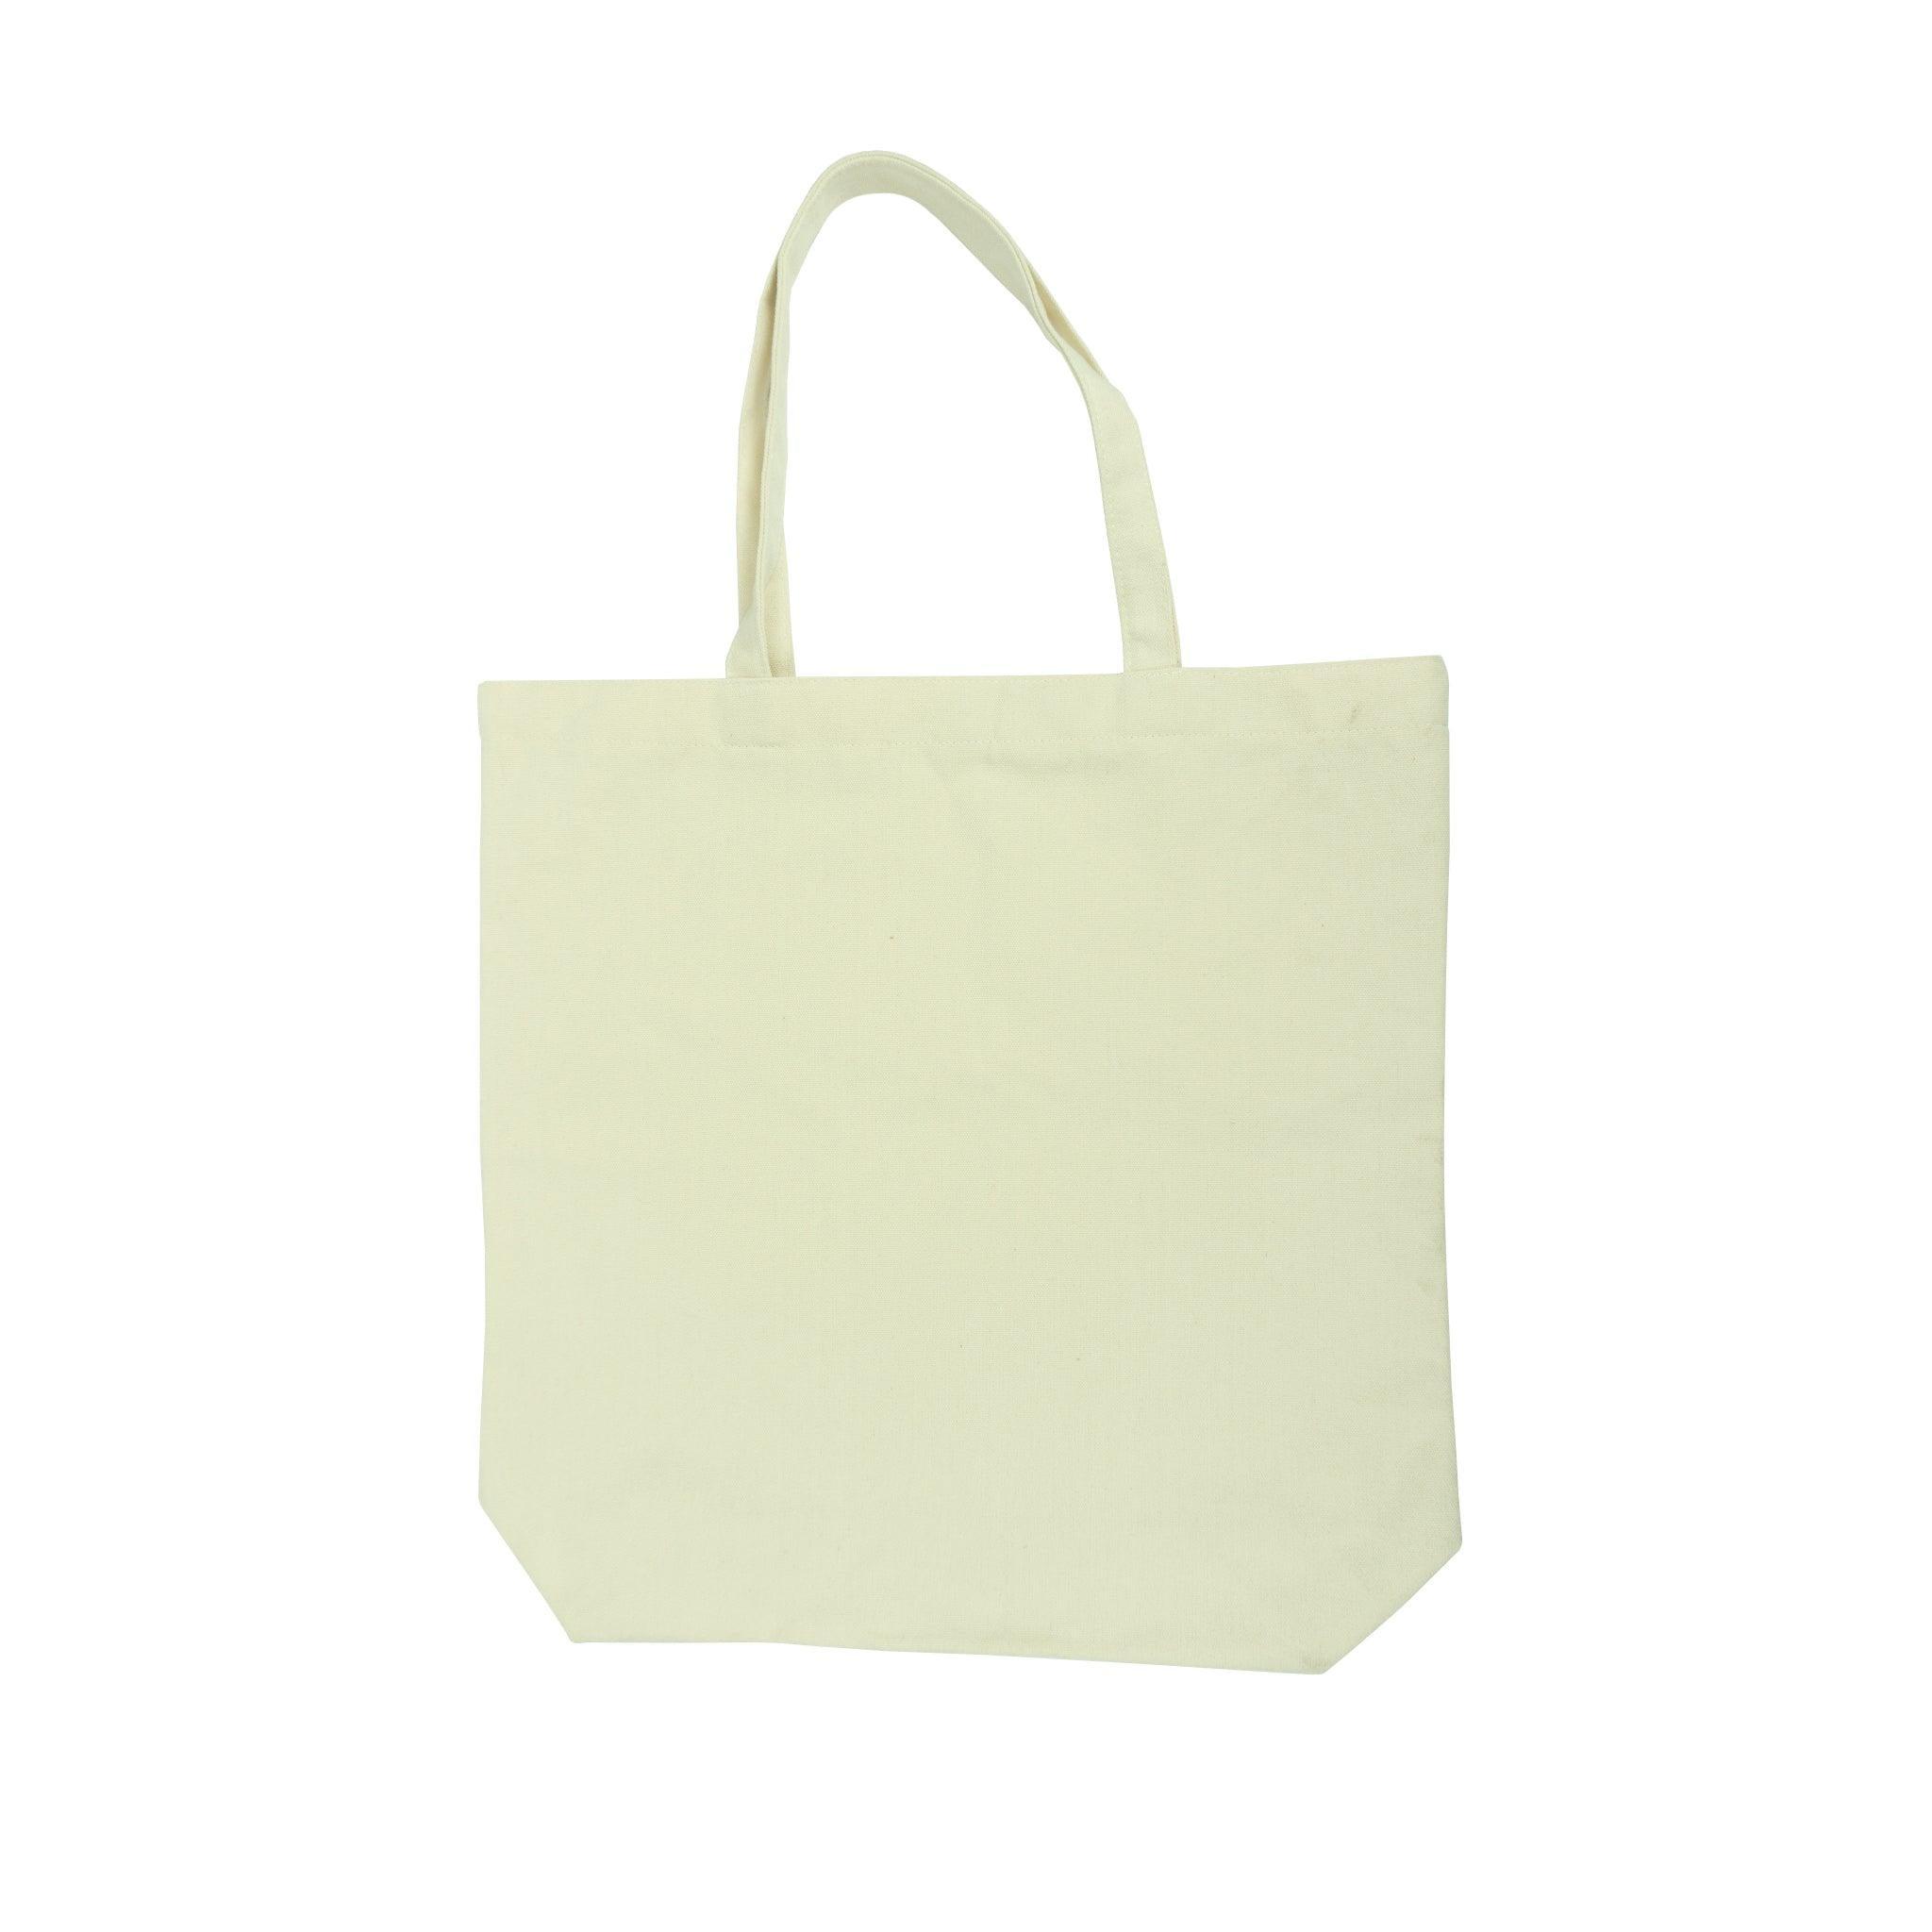 Khaki Tote Bag - Large – Blank Sublimation Mugs